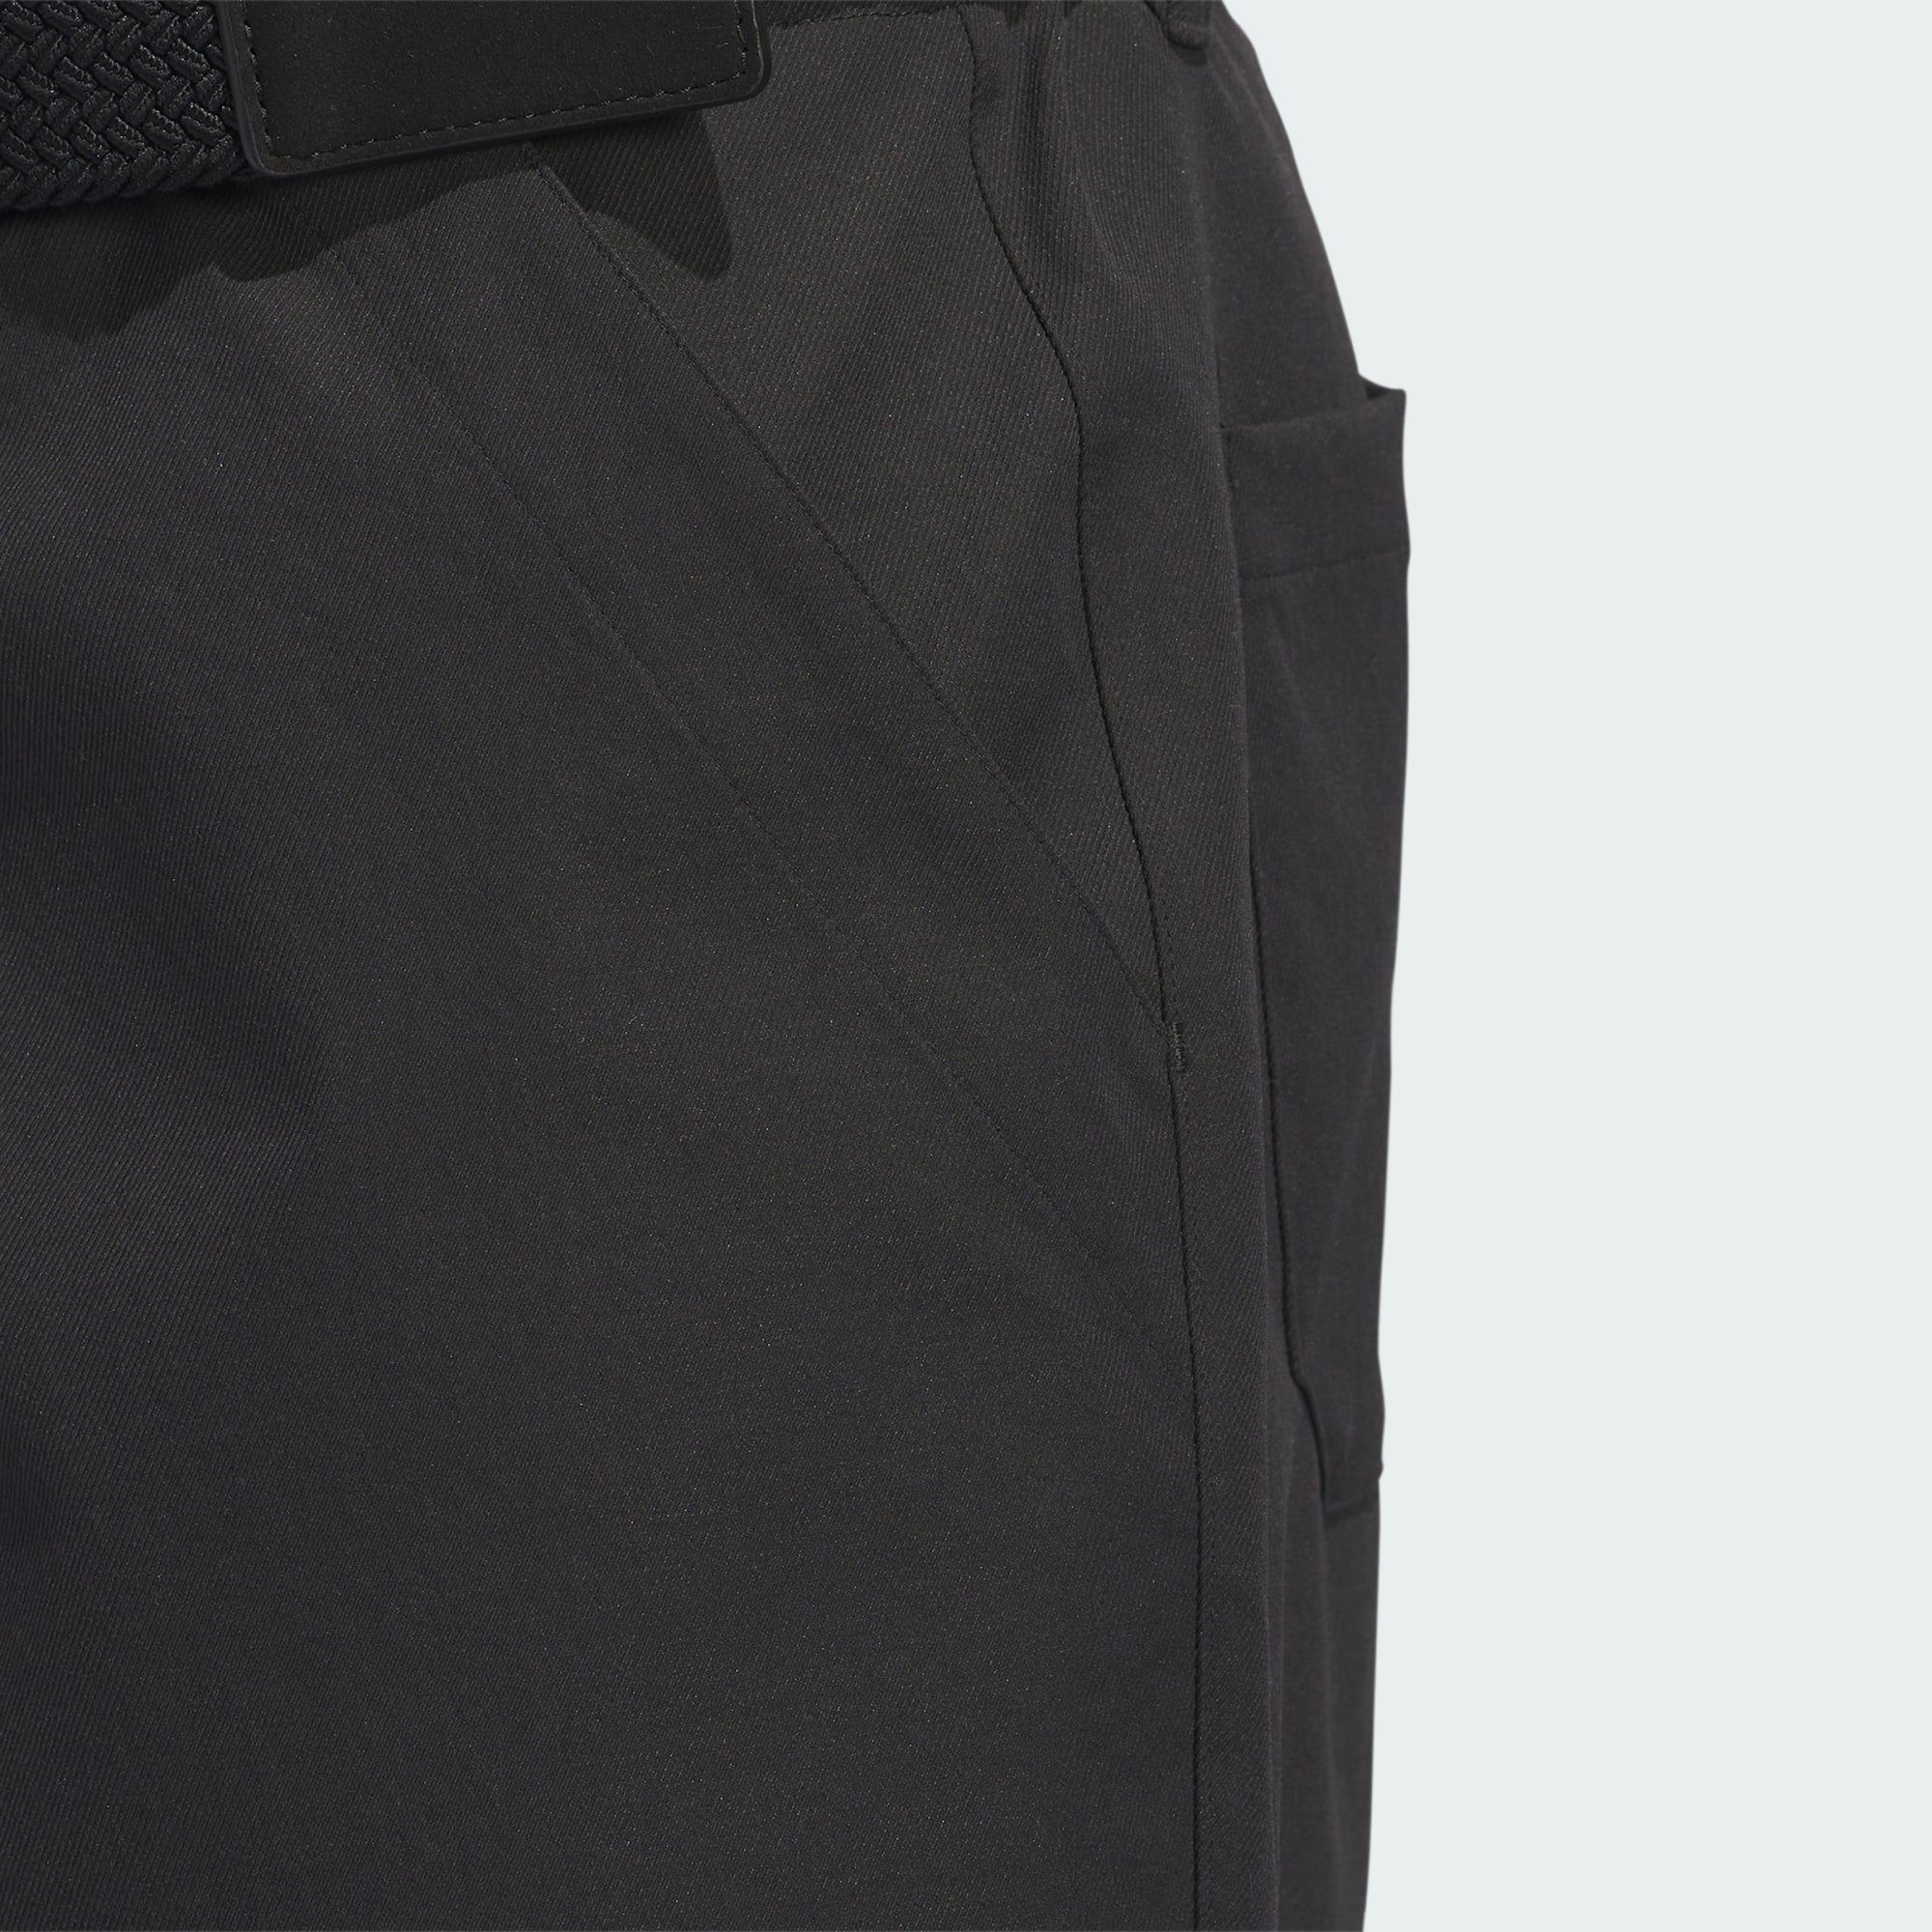 Golfhose PROGRESSIVE GO-TO Black HOSE Performance adidas